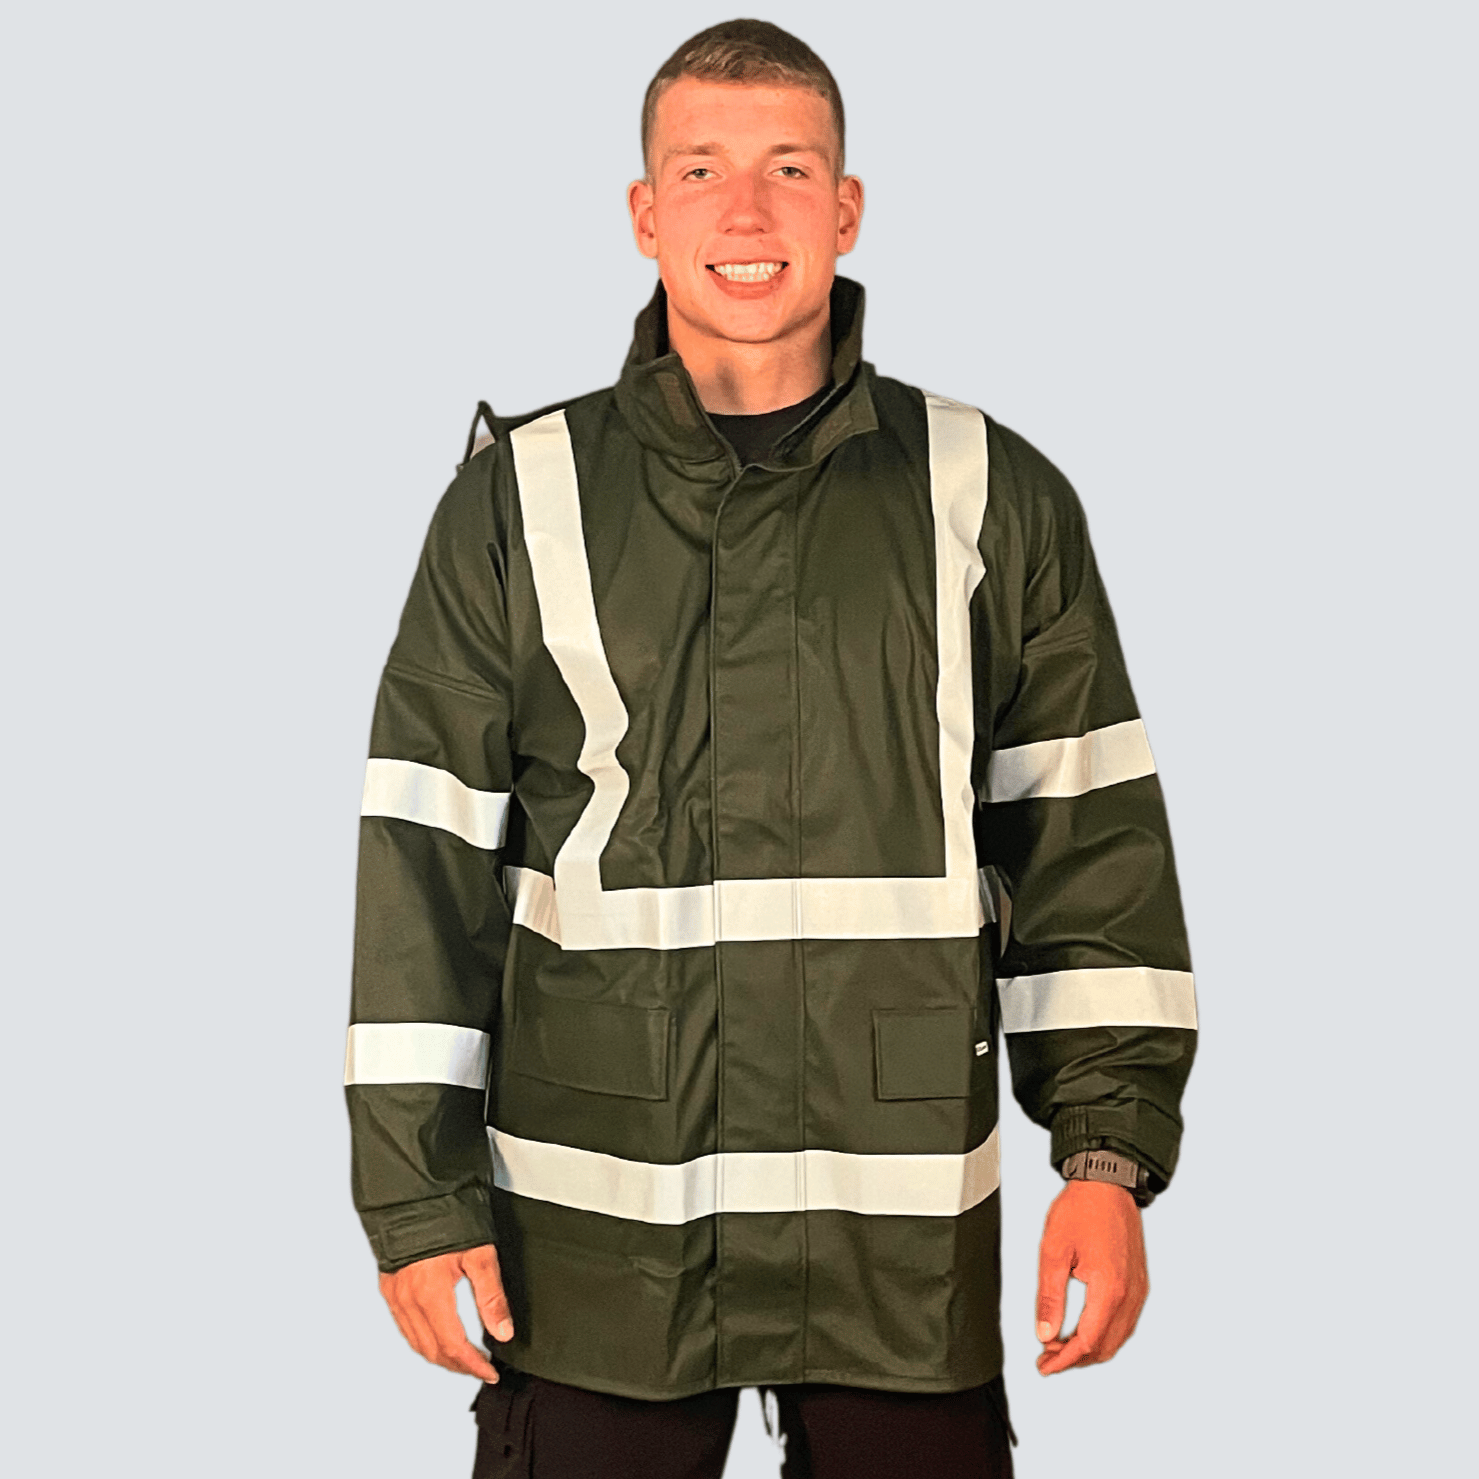 Weather Comfort Jacket with Reflexes